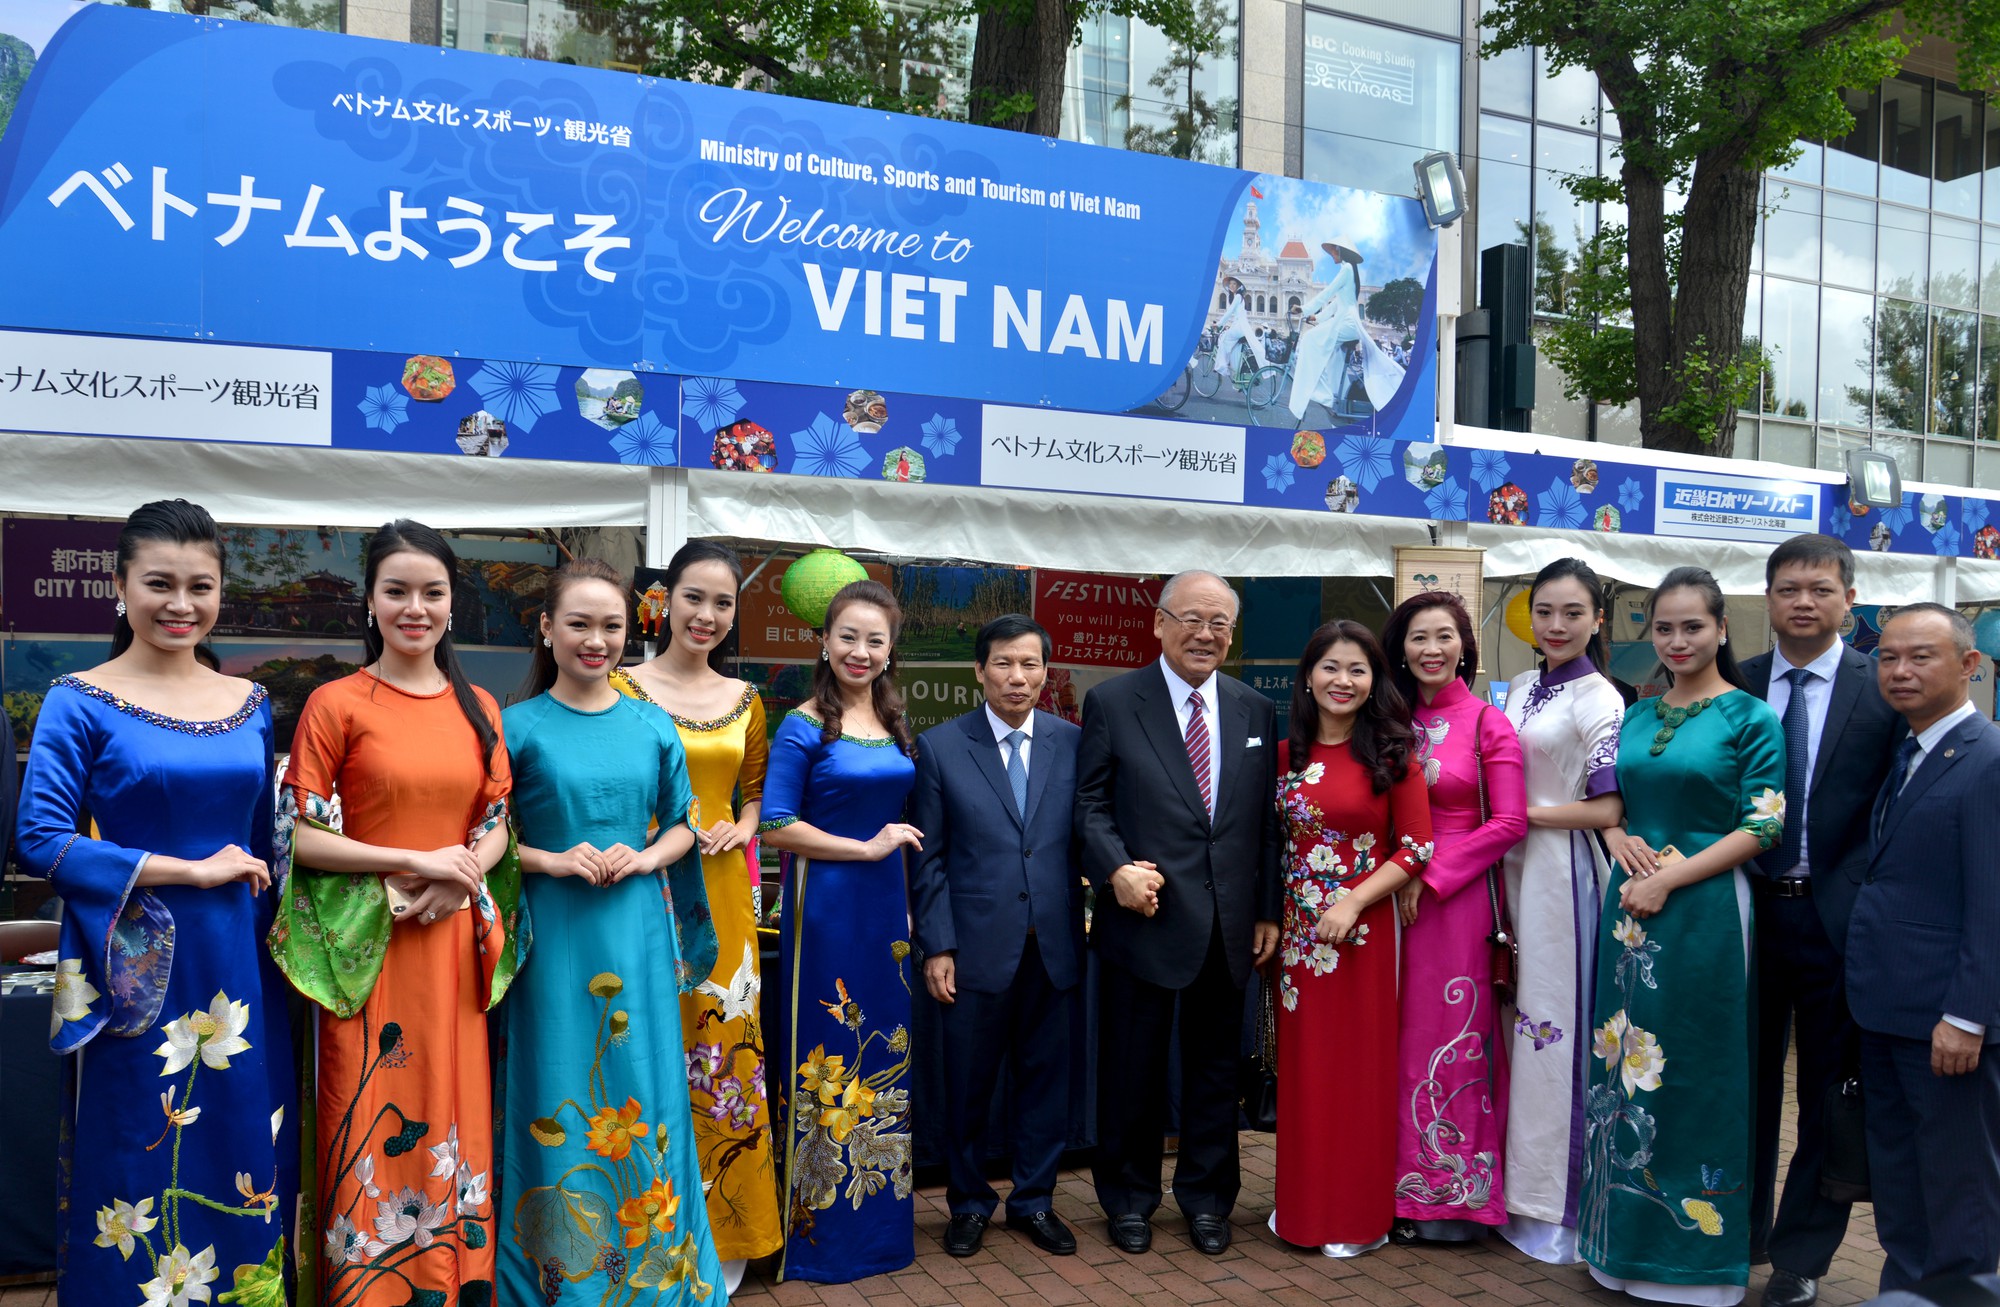 Lễ hội Việt Nam tại Sapporo năm 2019 lần thứ nhất - Ảnh 6.